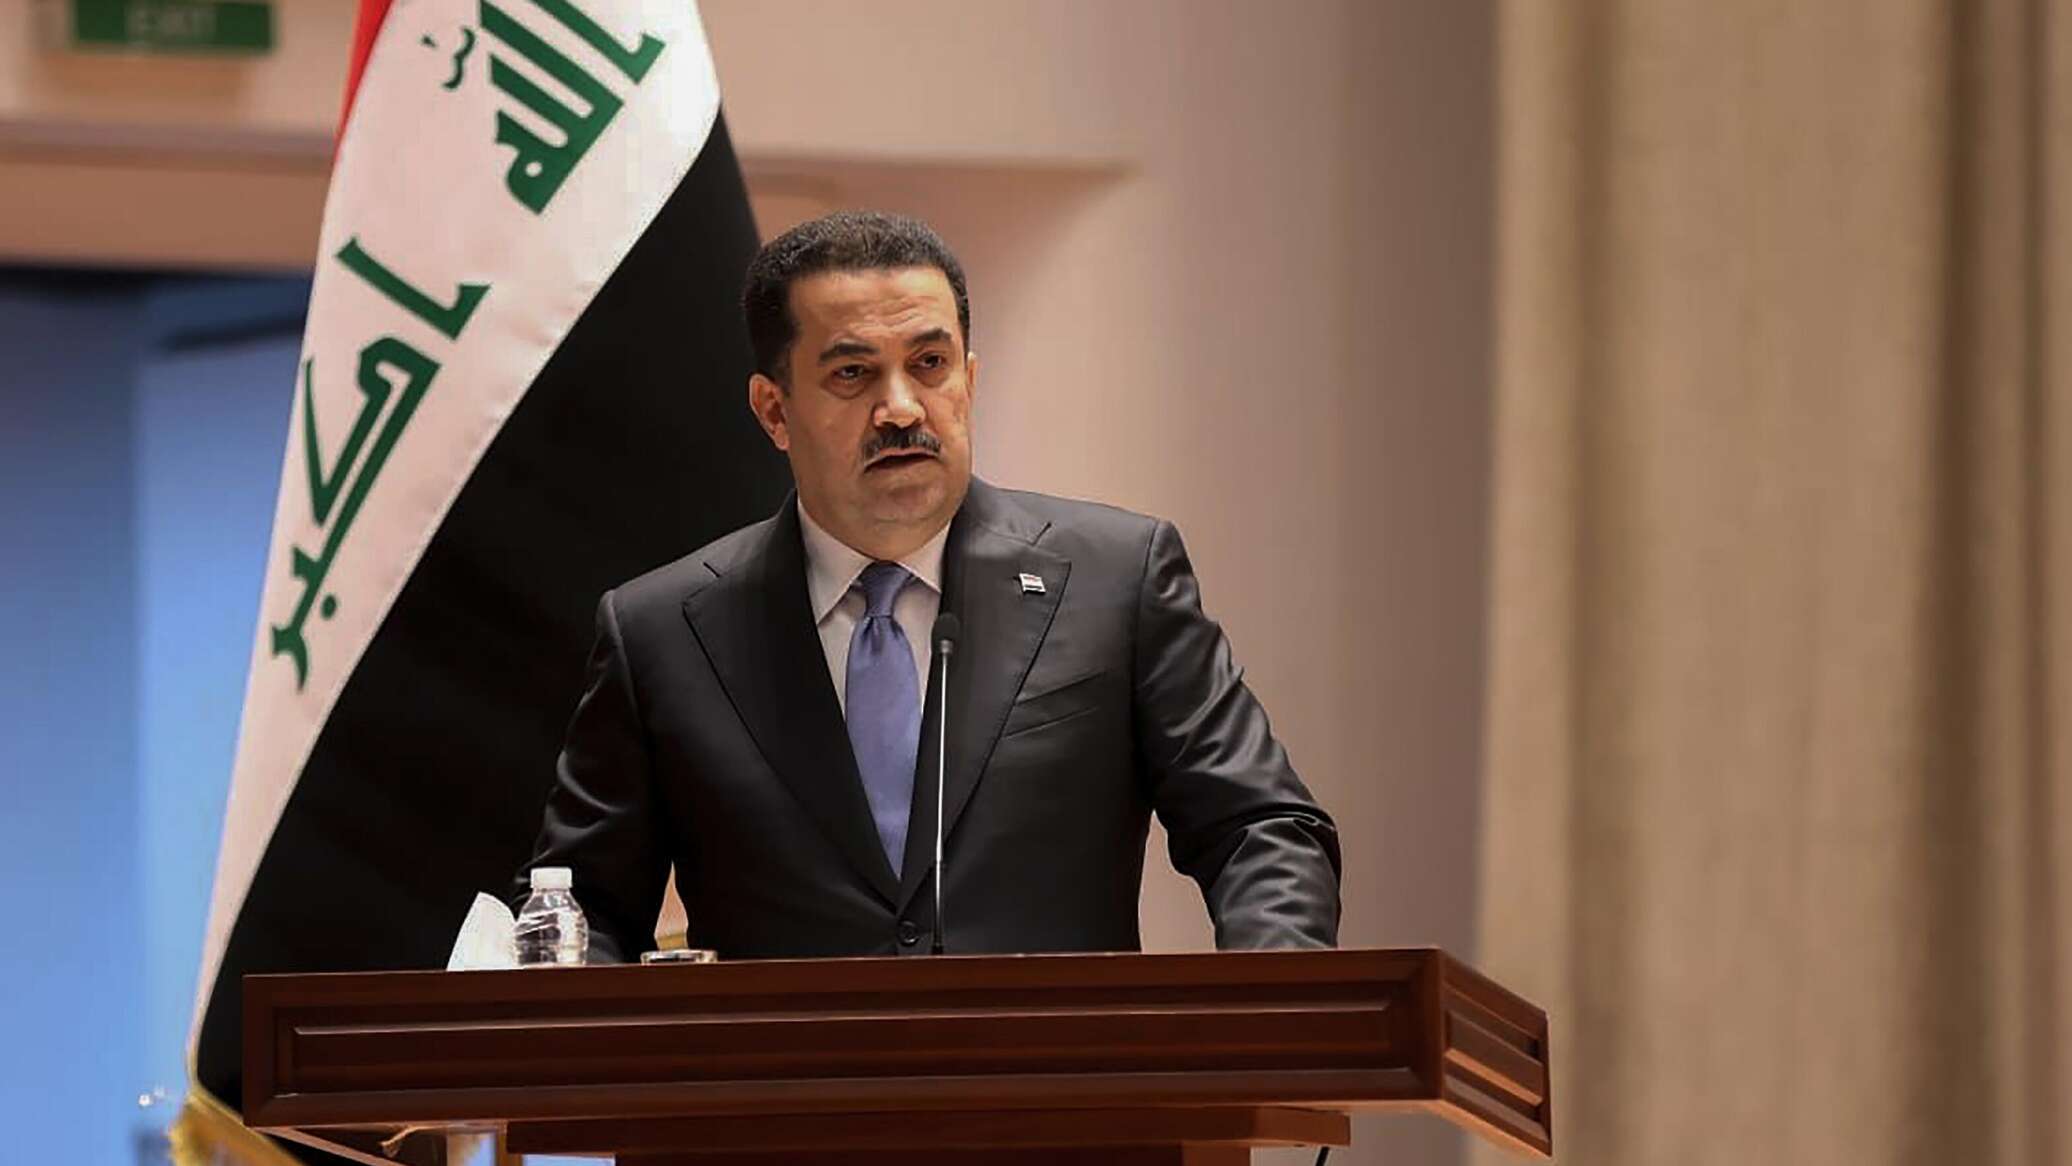 العراق يؤكد أن الأوضاع مؤهلة لإنهاء دور "التحالف الدولي" على أراضيه